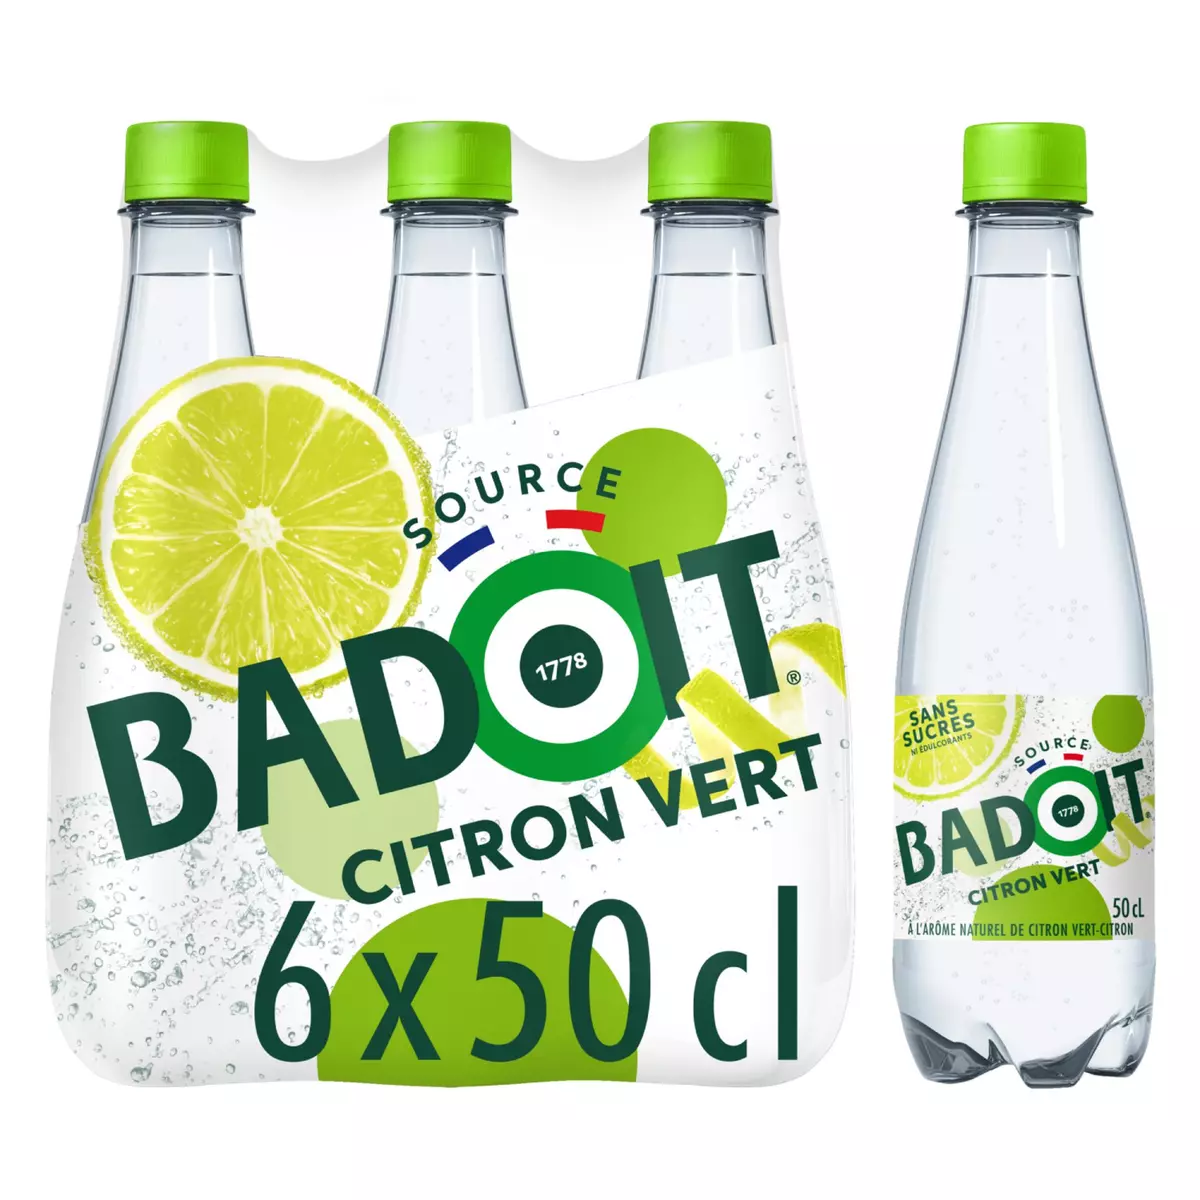 BADOIT Zest eau minérale naturelle gazeuse au citron vert bouteilles 6x50cl